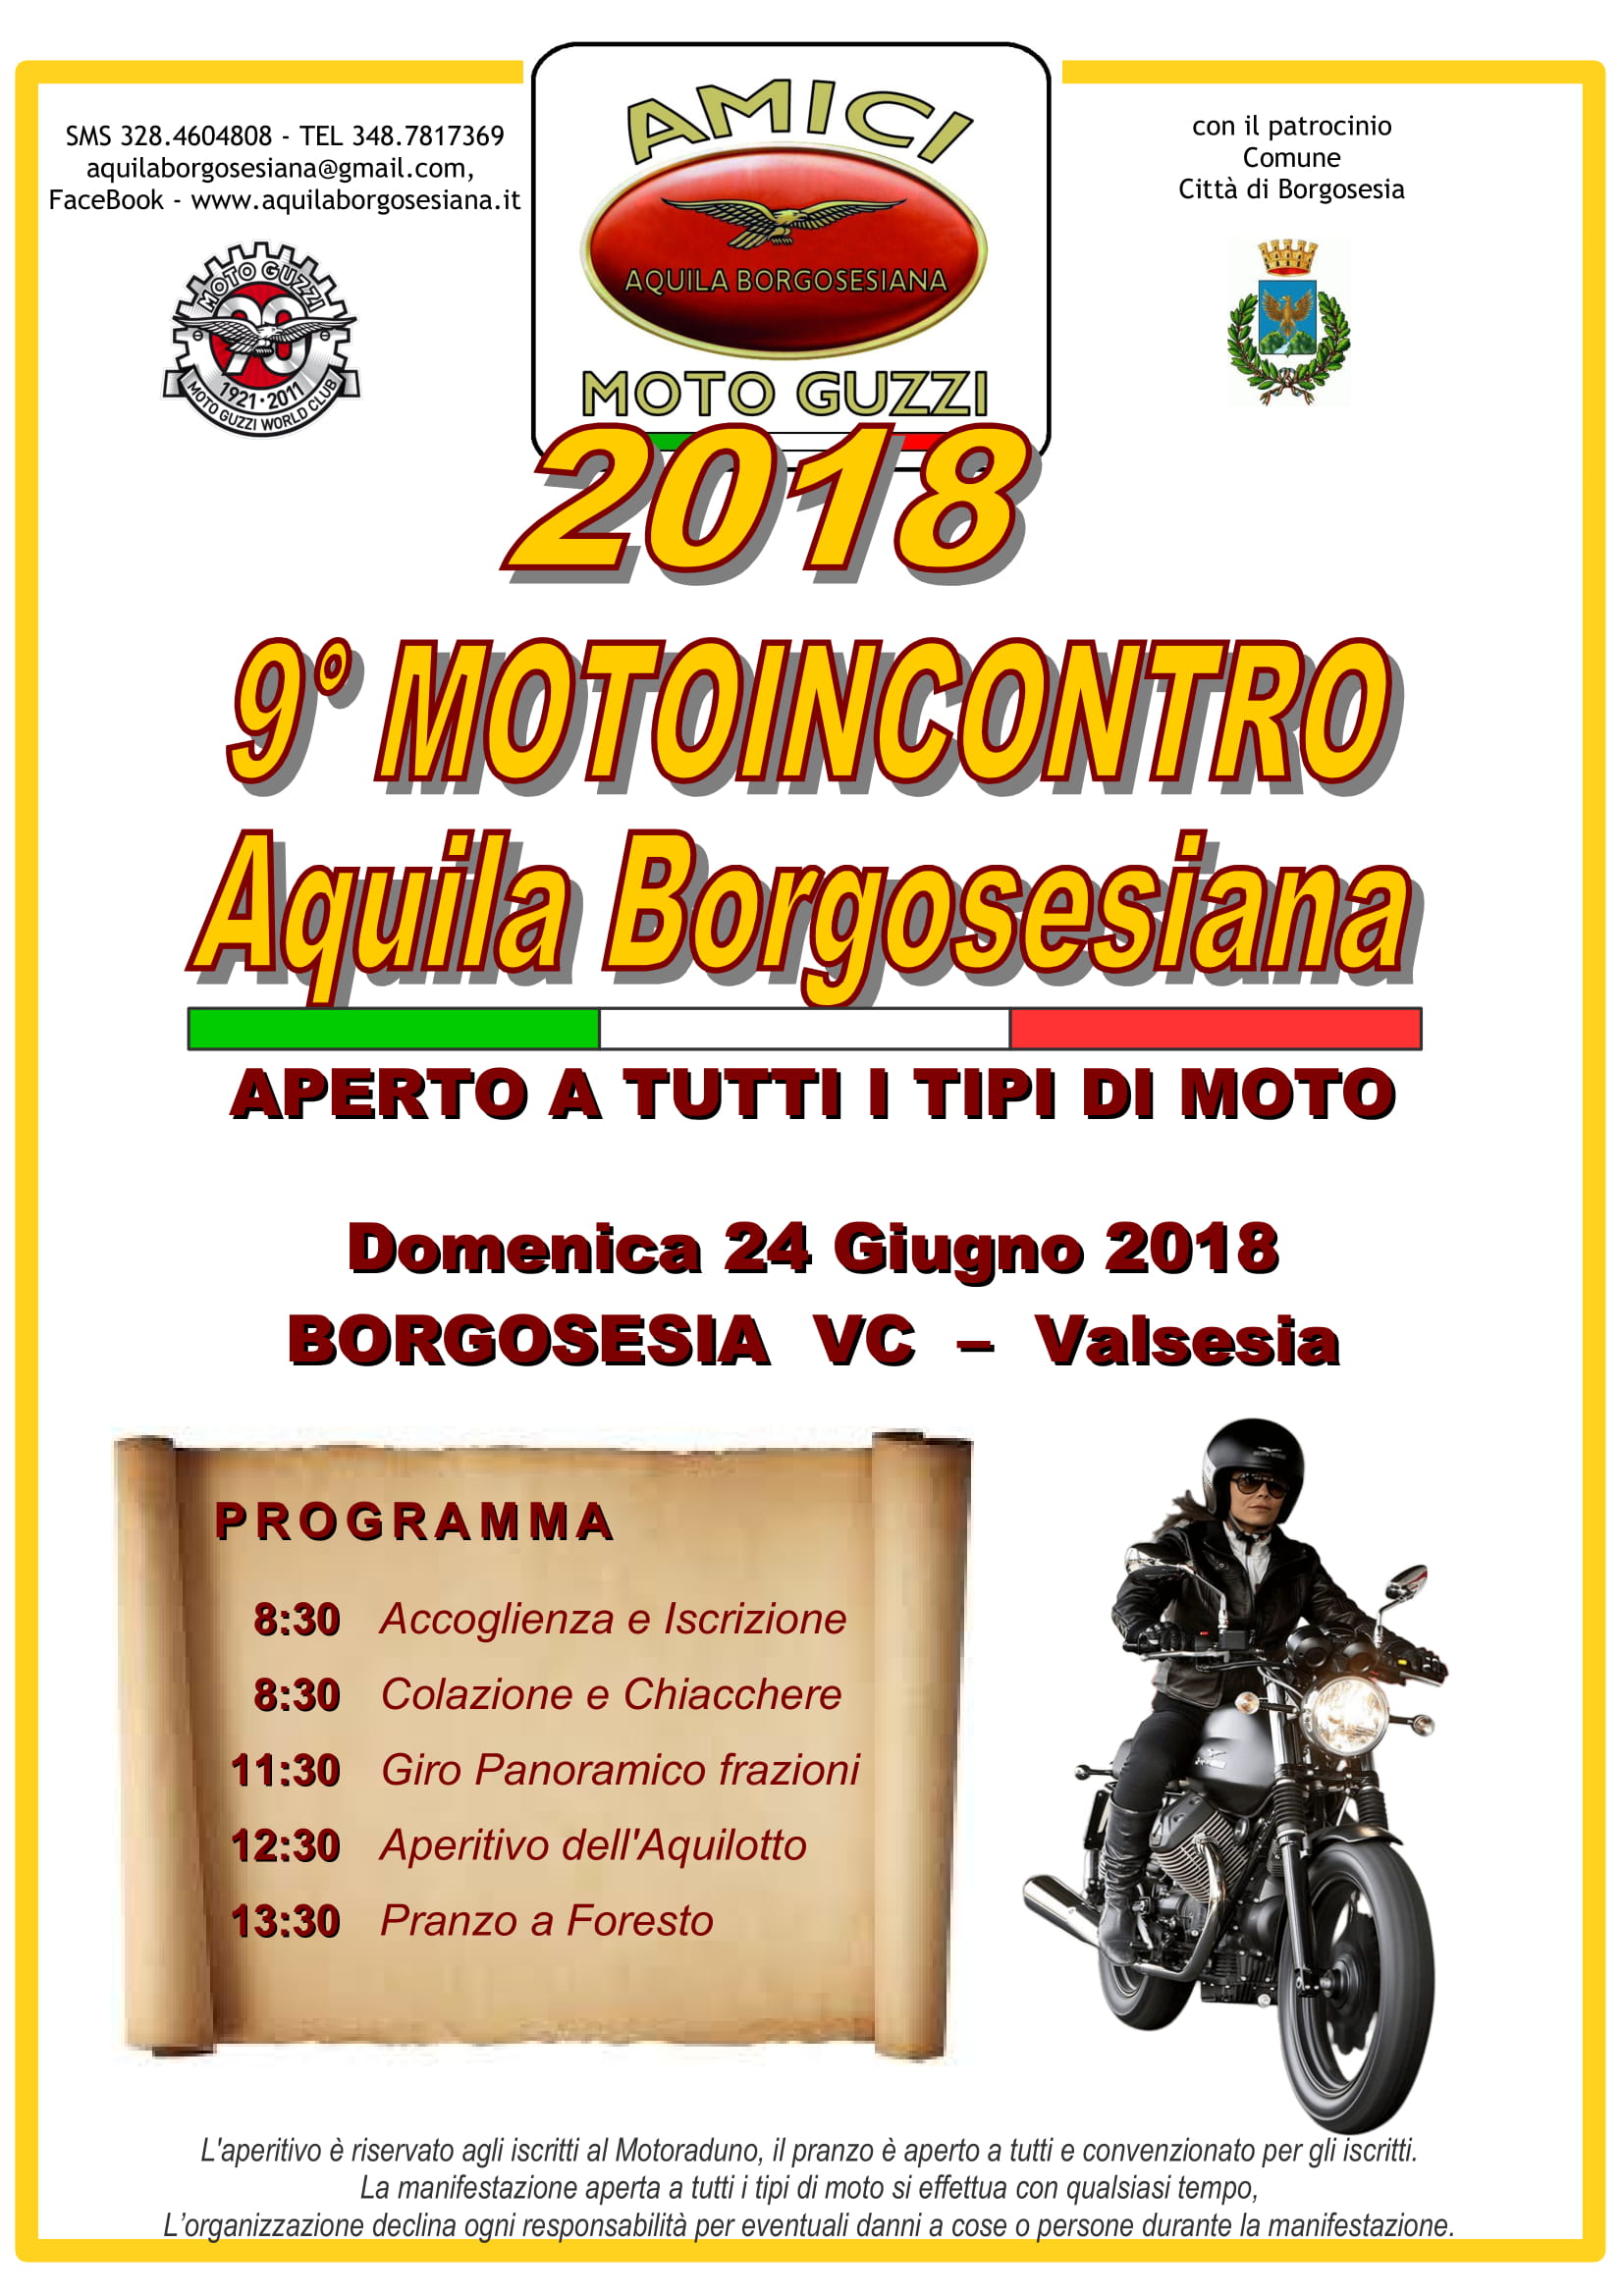 Volantino 9 Motoincontro AQUILA BORGOSESIANA 2018-1